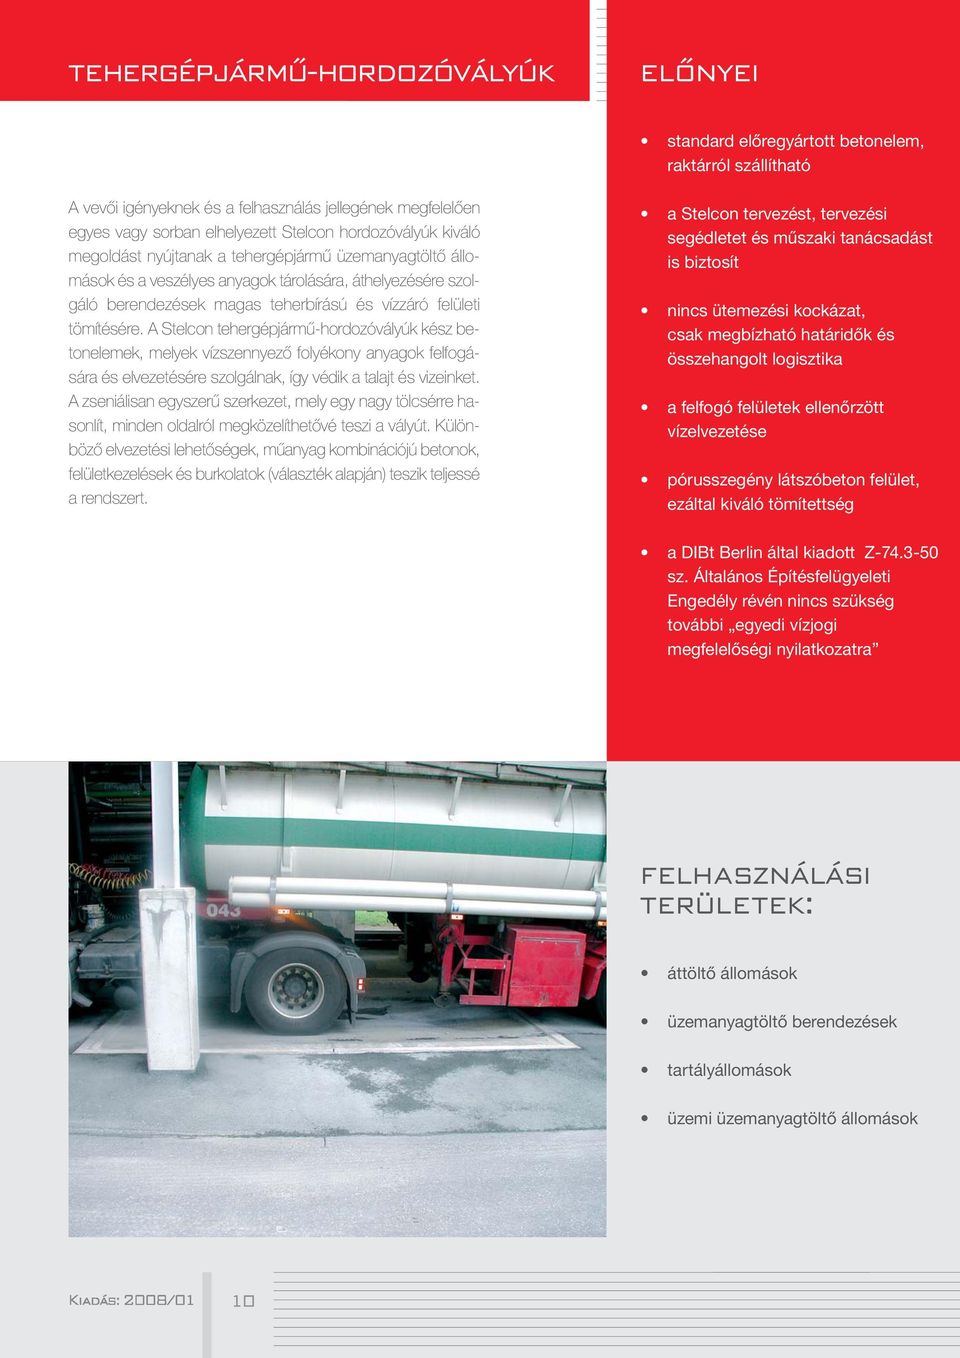 tömítésére. A Stelcon tehergépjármű-hordozóvályúk kész betonelemek, melyek vízszennyező folyékony anyagok felfogására és elvezetésére szolgálnak, így védik a talajt és vizeinket.